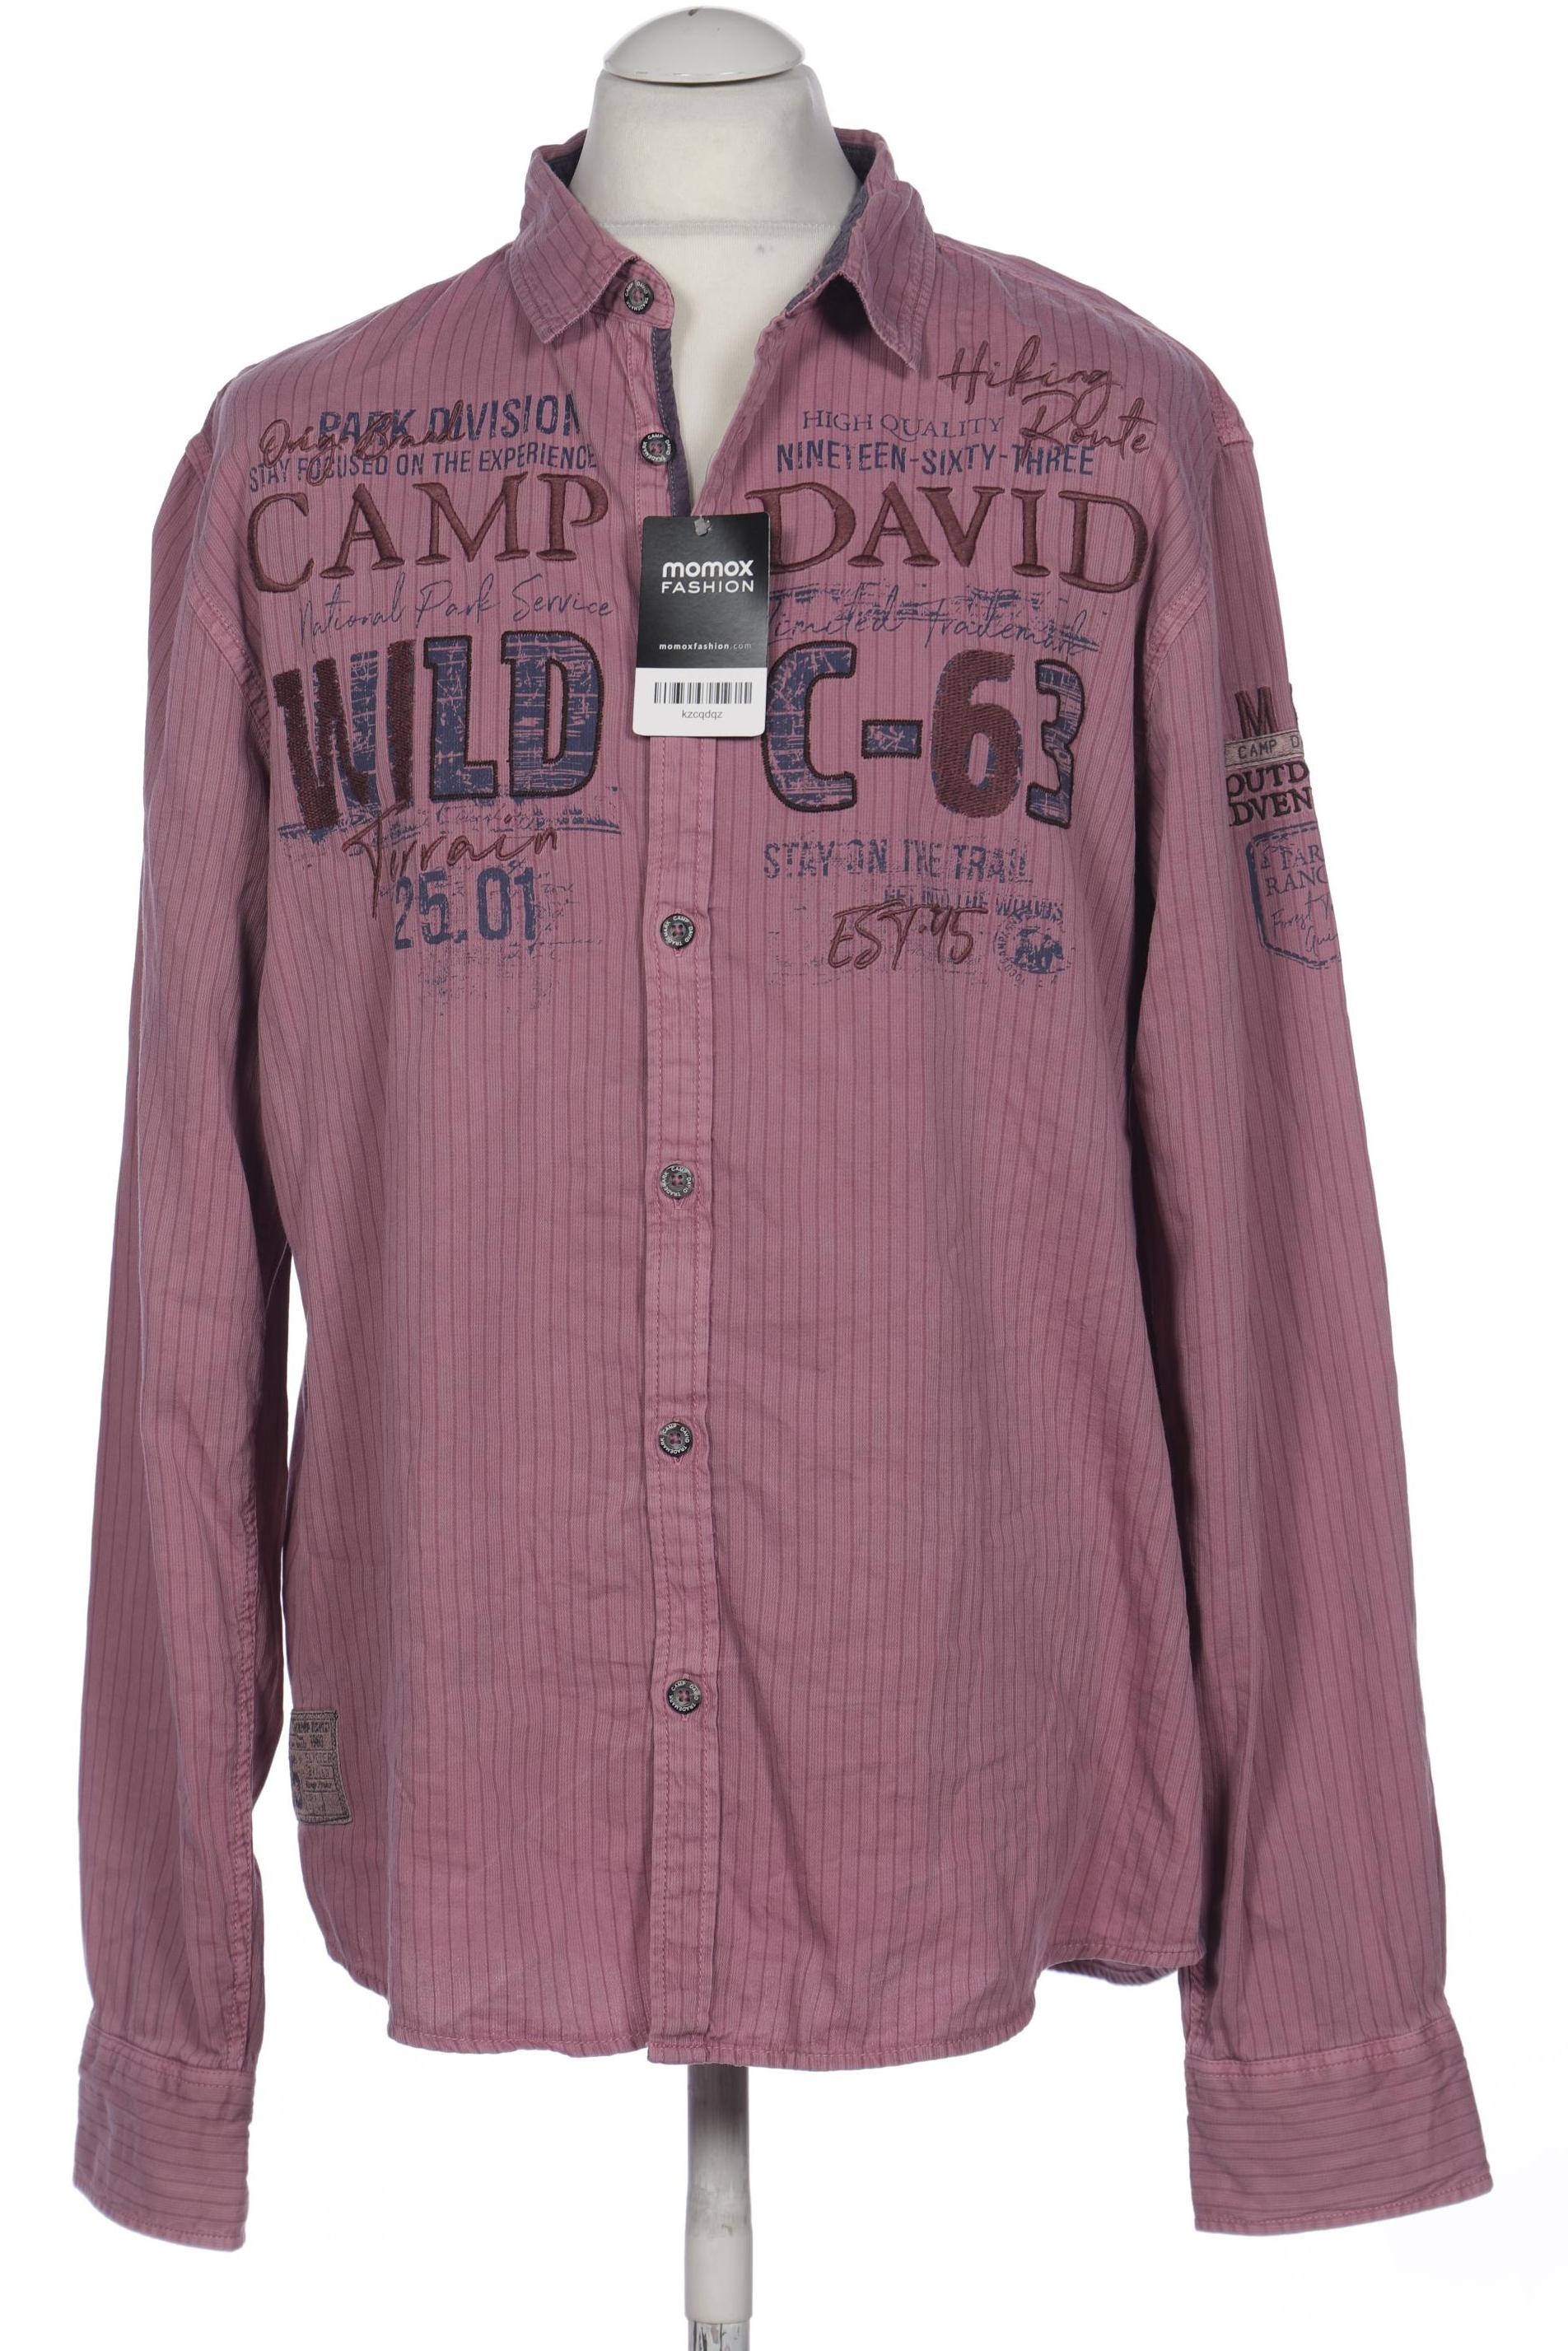 Camp David Herren Hemd, pink von camp david